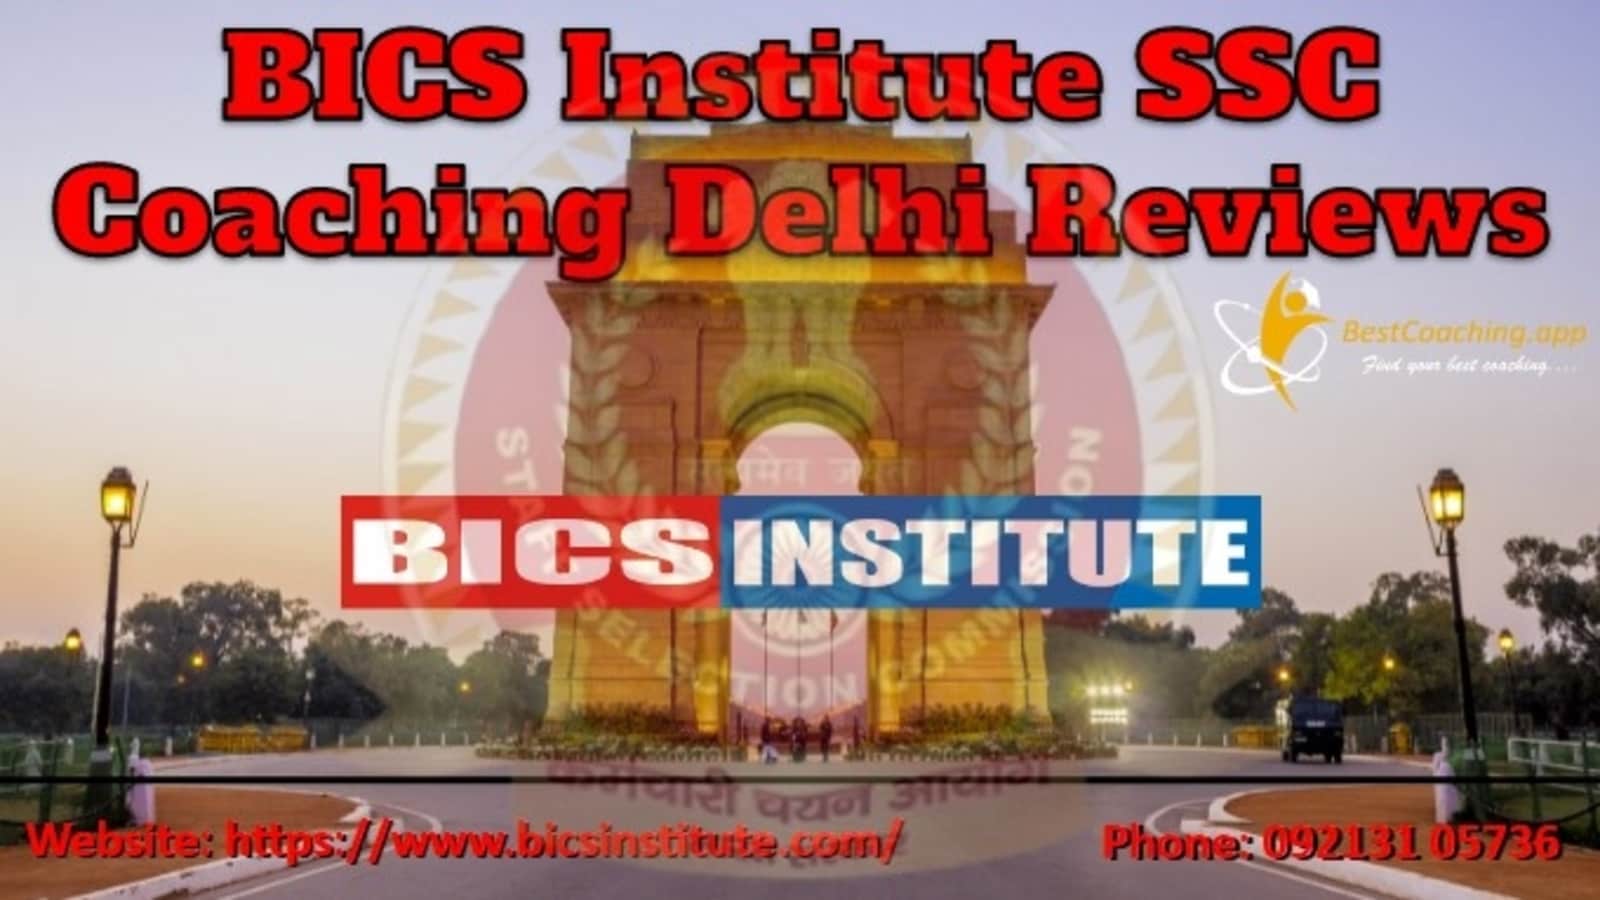 BICS Institute SSC Coaching in Delhi